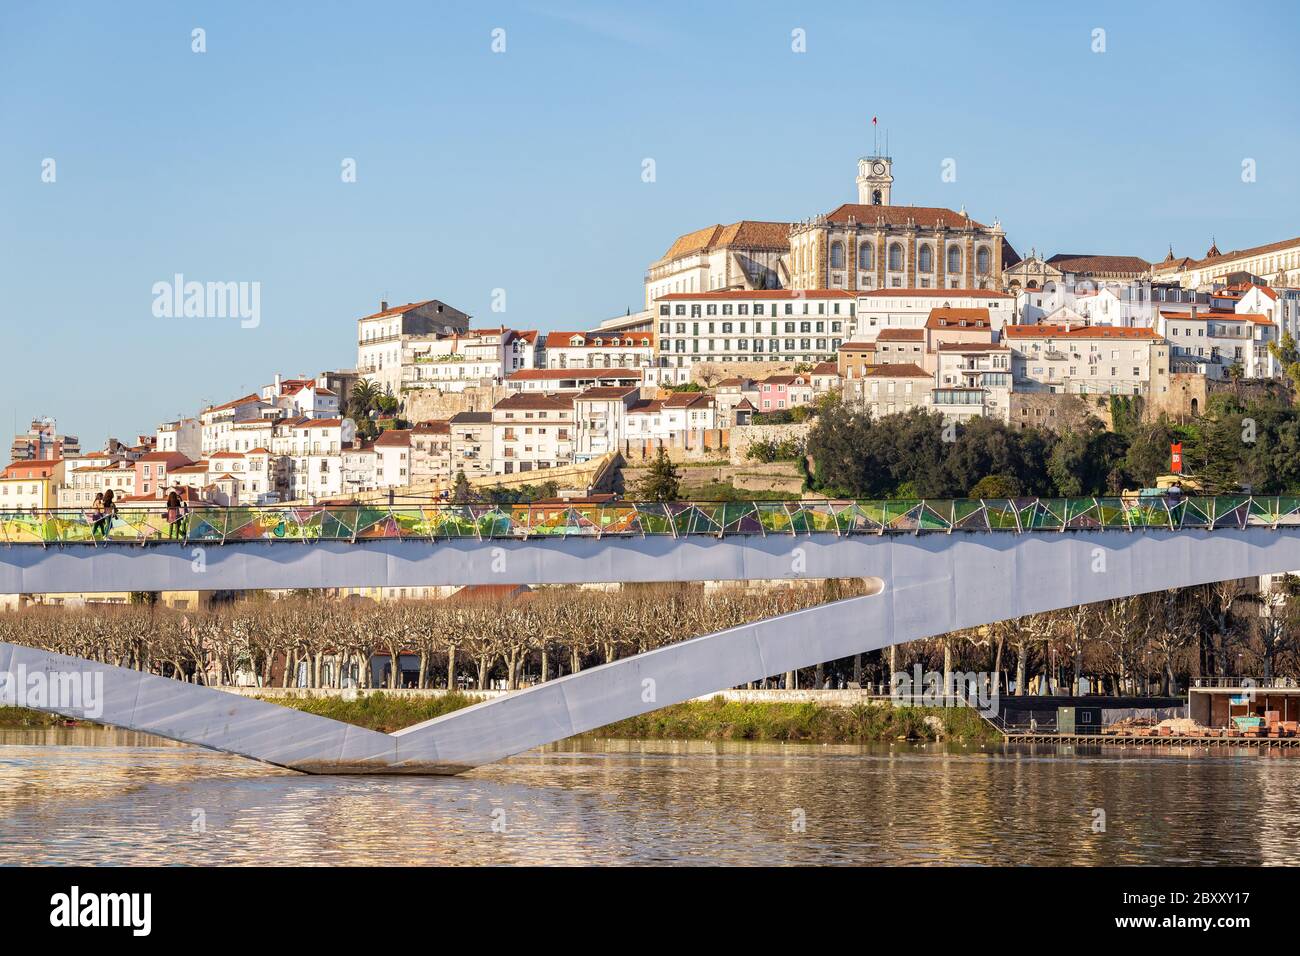 Paysage urbain historique de Coimbra avec université en haut de la colline, Portugal Banque D'Images